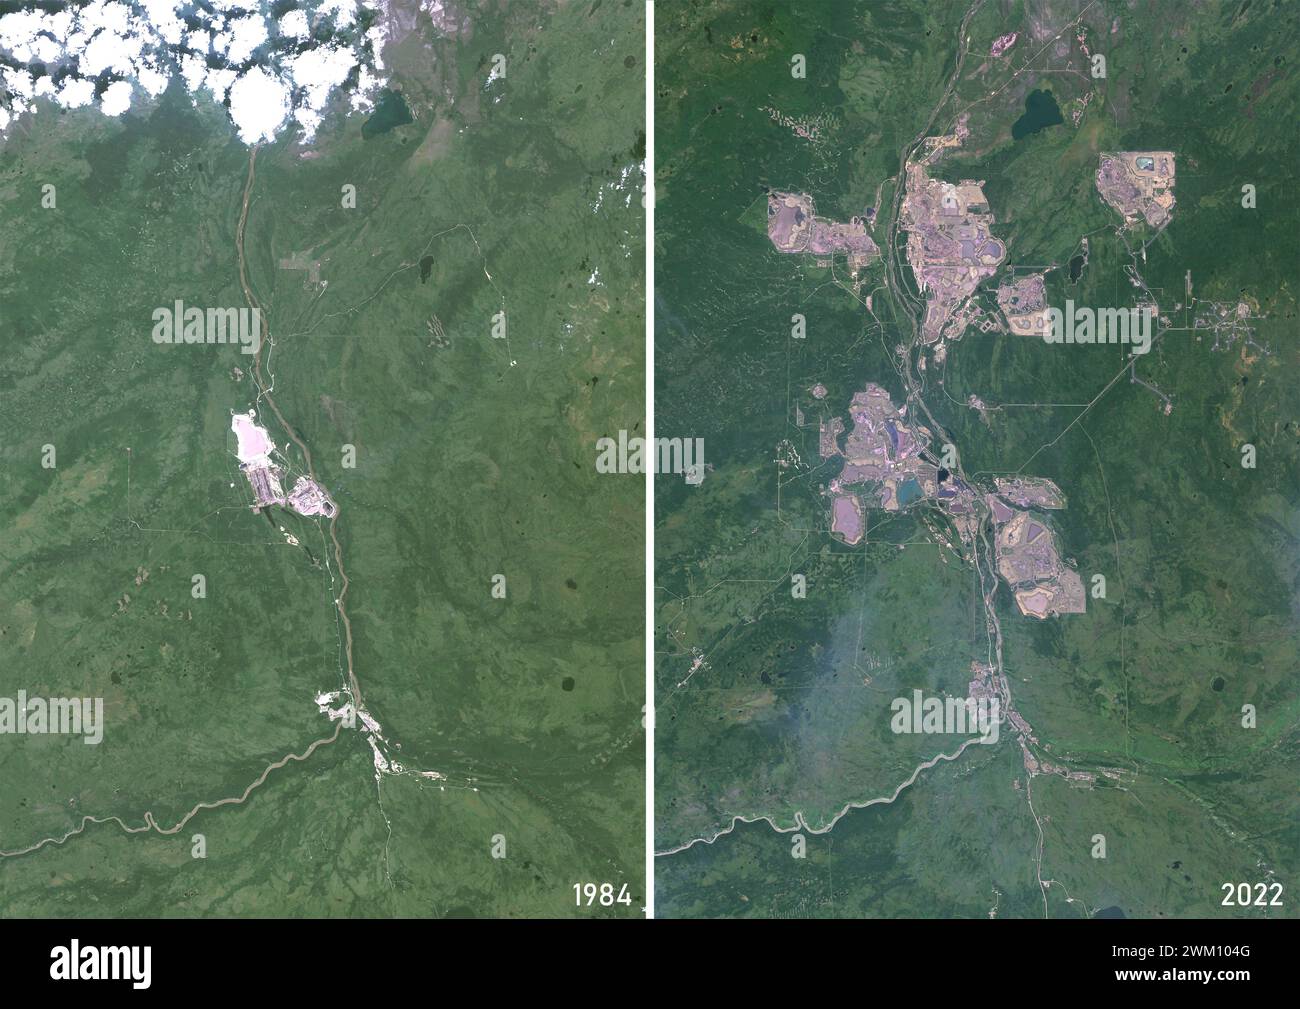 Farb-Satellitenbild von Fort McKay, Alberta, Kanada in den Jahren 1984 und 2022, vor und nach der Ausbeutung von Teersanden oder Ölsanden. Stockfoto